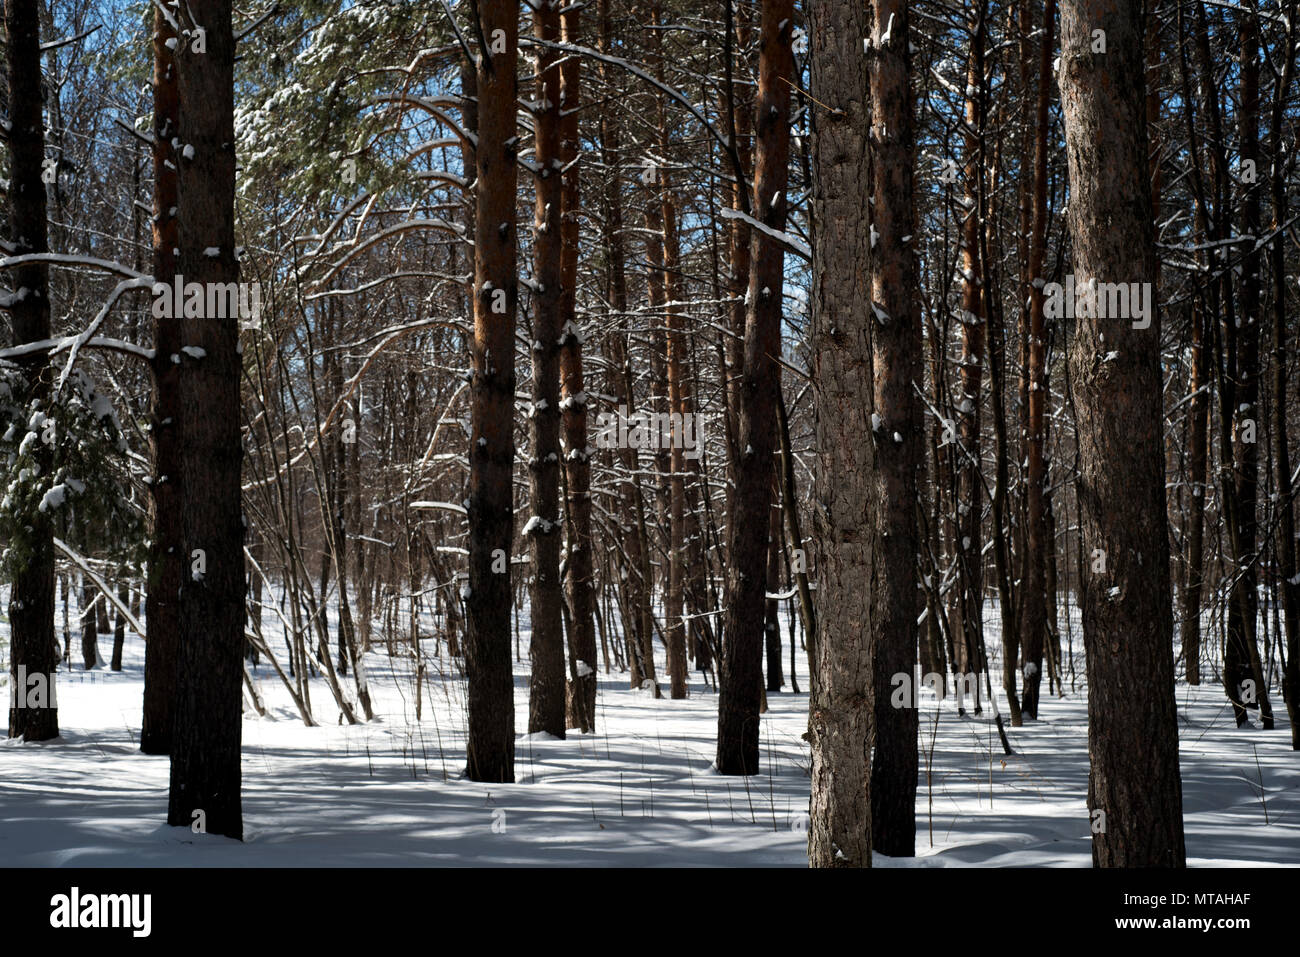 Pin Sapin de troncs d'arbre dans la nature avec de la neige au sol couvrant le sol de la forêt et les arbres forestiers Banque D'Images